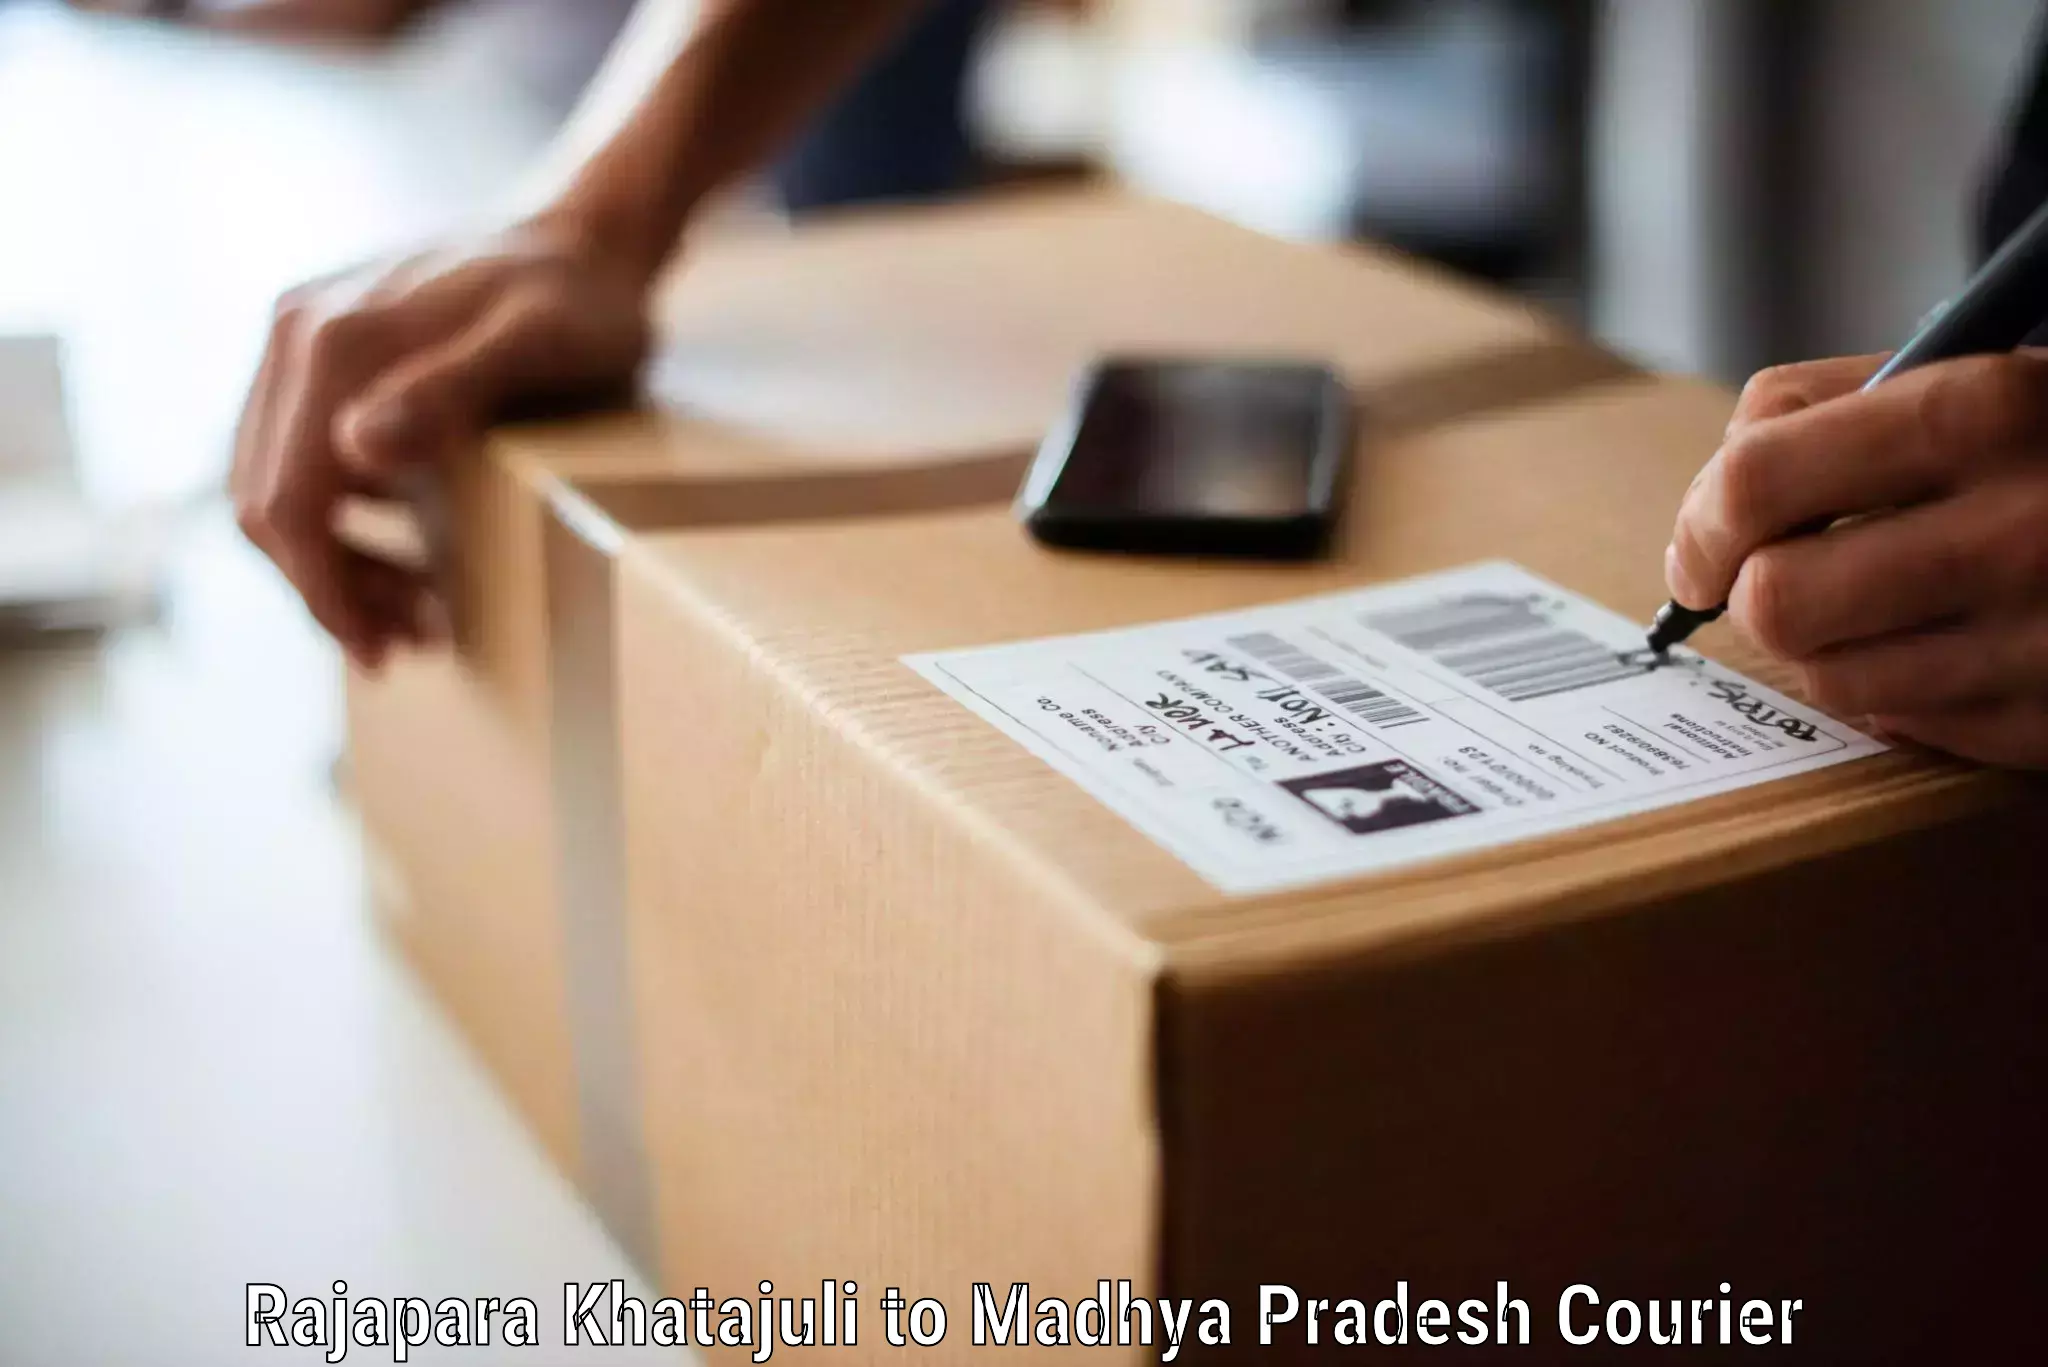 Furniture moving and handling Rajapara Khatajuli to Madhya Pradesh